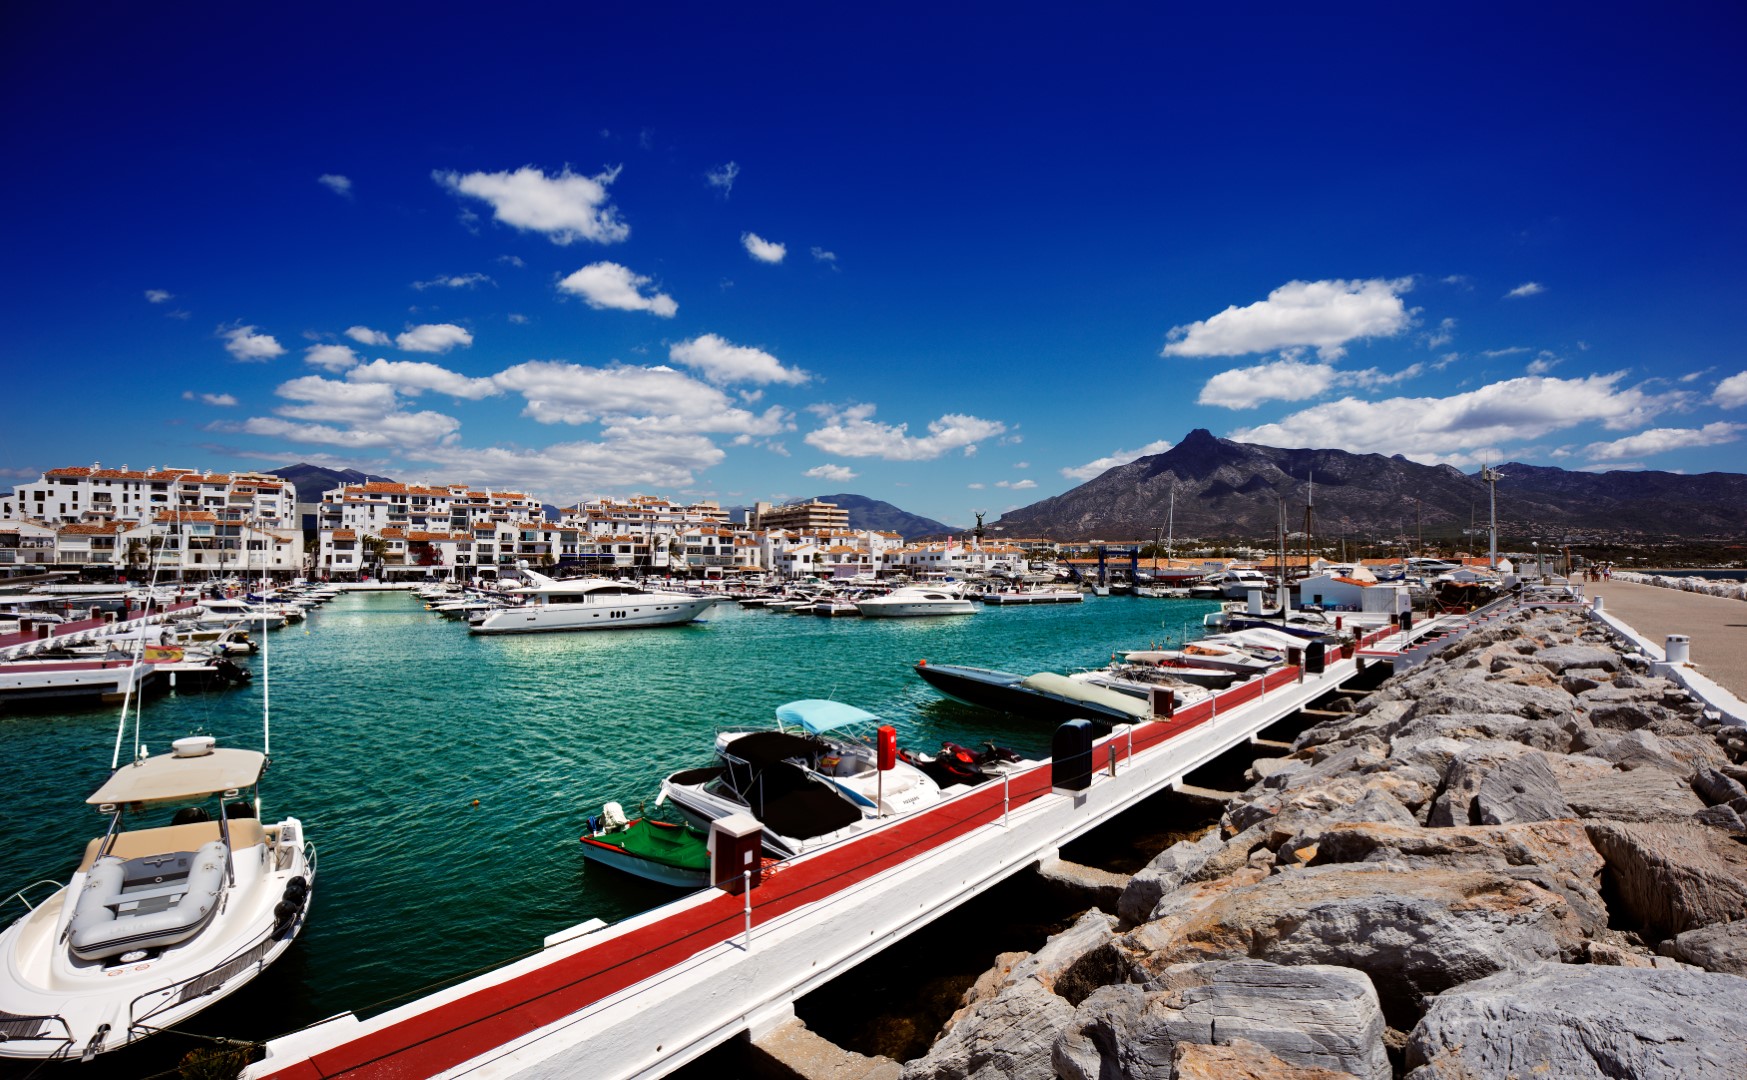 Kostenlose Corona-Reisekrankenversicherung um den Tourismus in Andalusien anzukurbeln